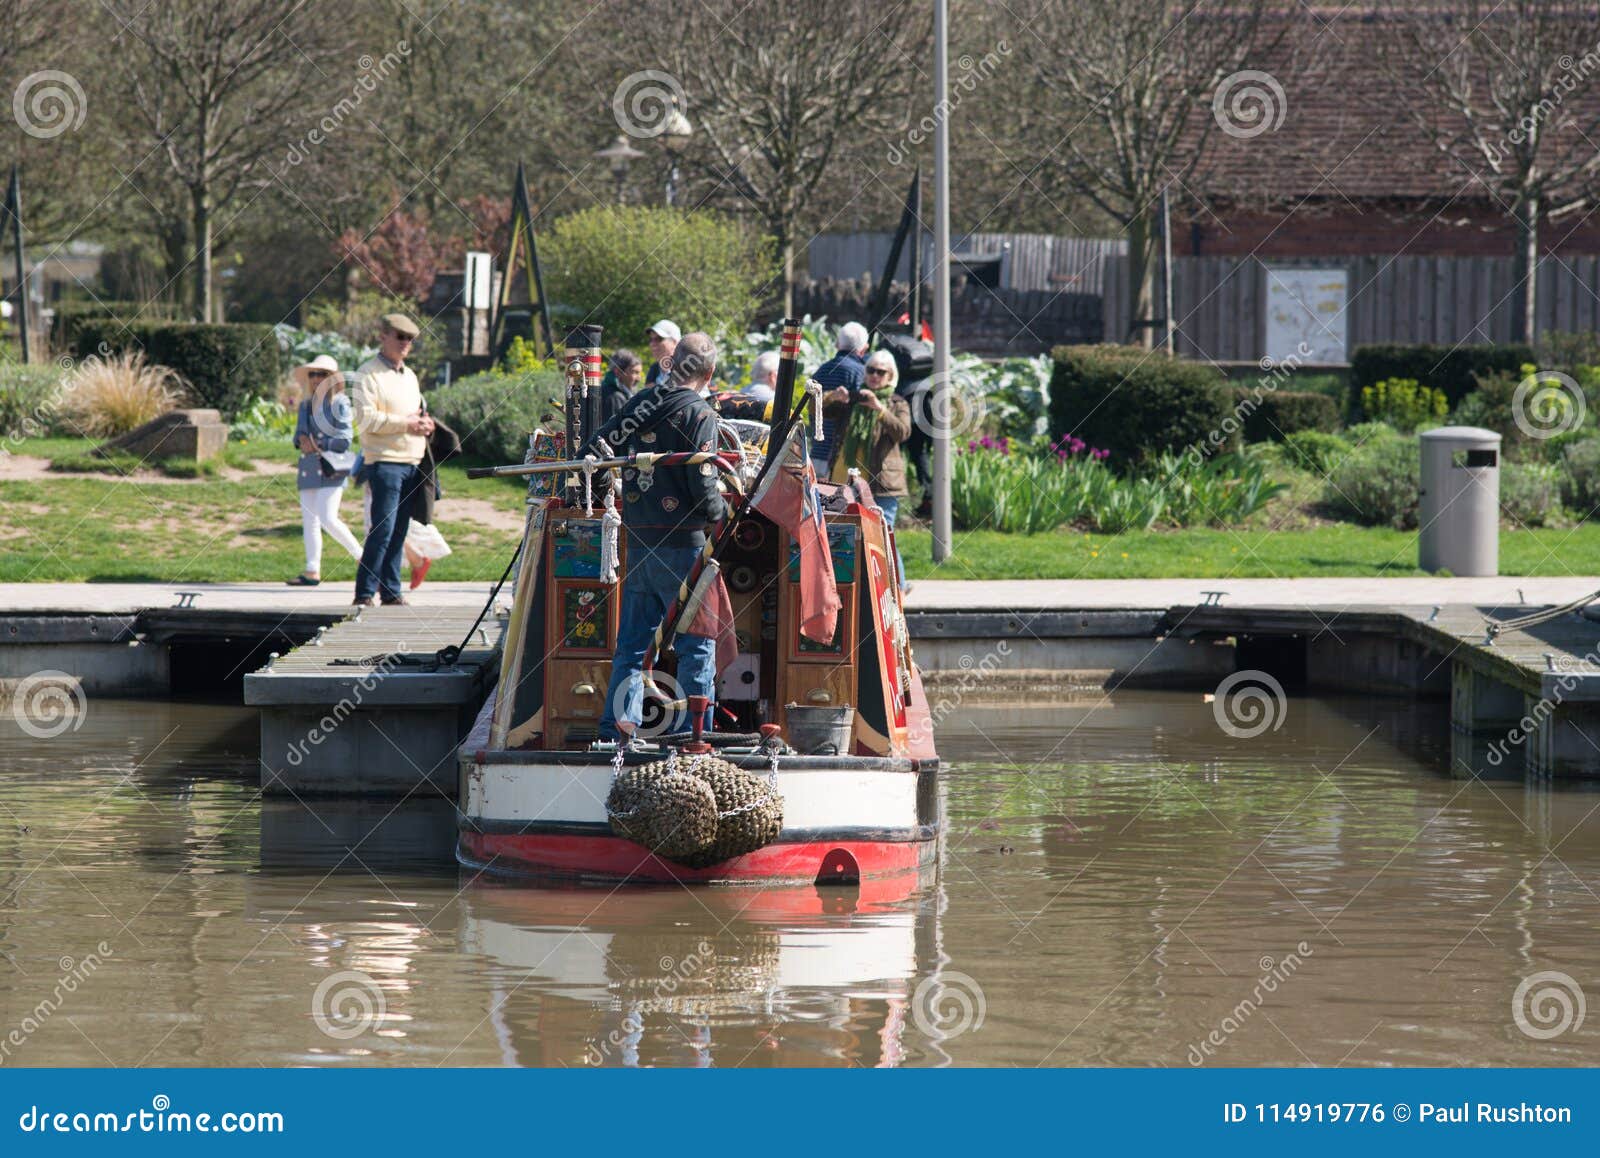 Mężczyzna stojaki na stern beatifully coloured barka. Stratford na Avon Warwickshire Anglia ludzi ono cieszy się nadbrzeżnym w mini heatwave na Szekspir ` s urodziny weekendzie UK 20/4/2018